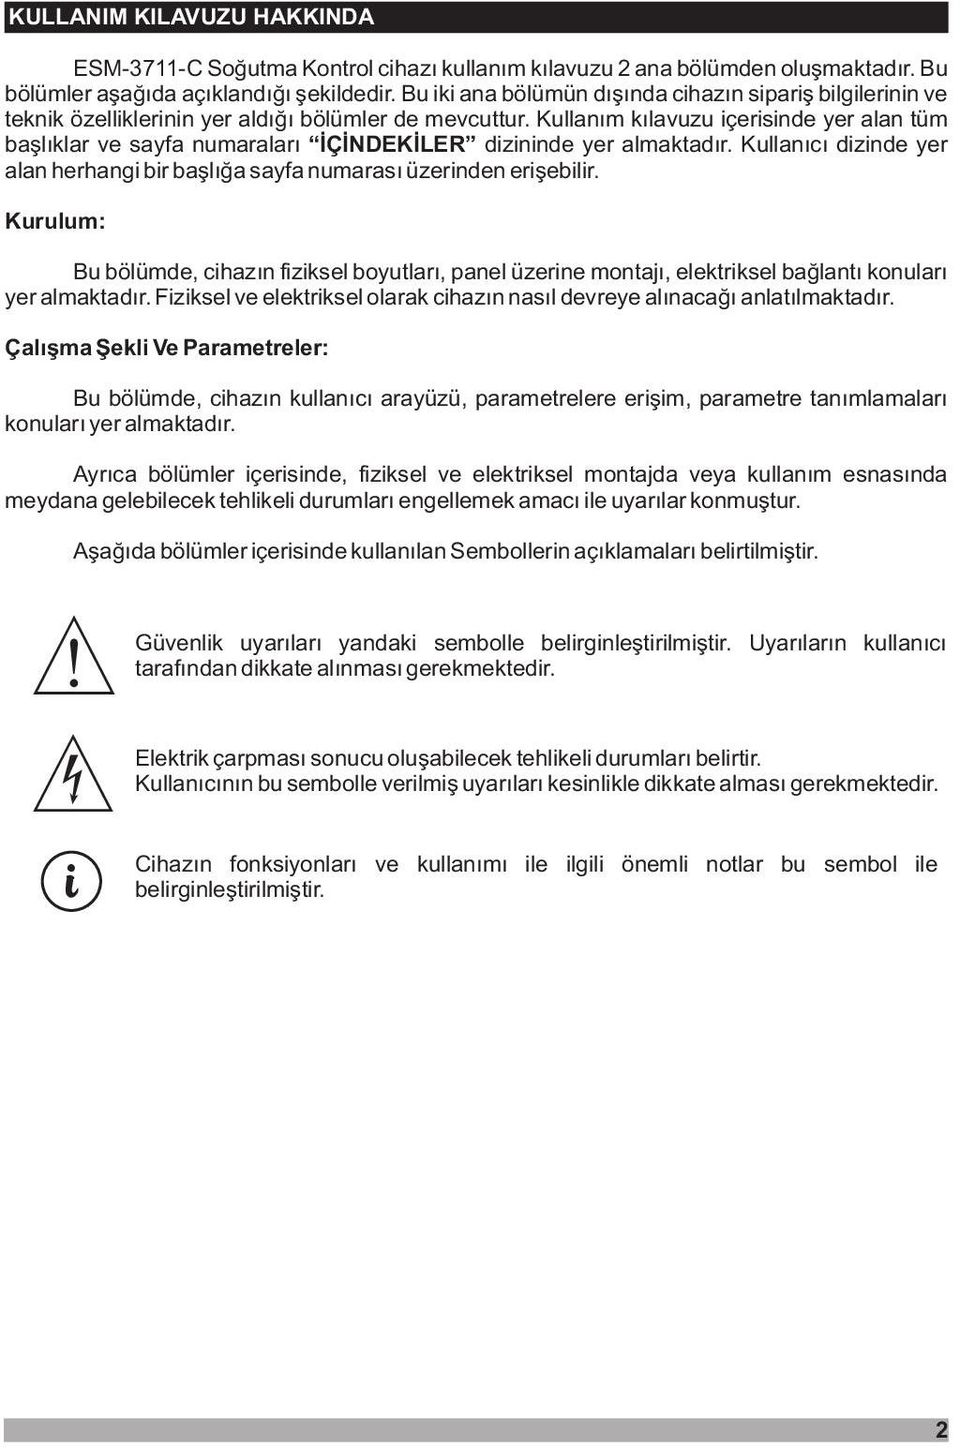 Kullaným kýlavuzu içerisinde yer alan tüm baþlýklar ve sayfa numaralarý ÝÇÝNDEKÝLER dizininde yer almaktadýr. Kullanýcý dizinde yer alan herhangi bir baþlýða sayfa numarasý üzerinden eriþebilir.